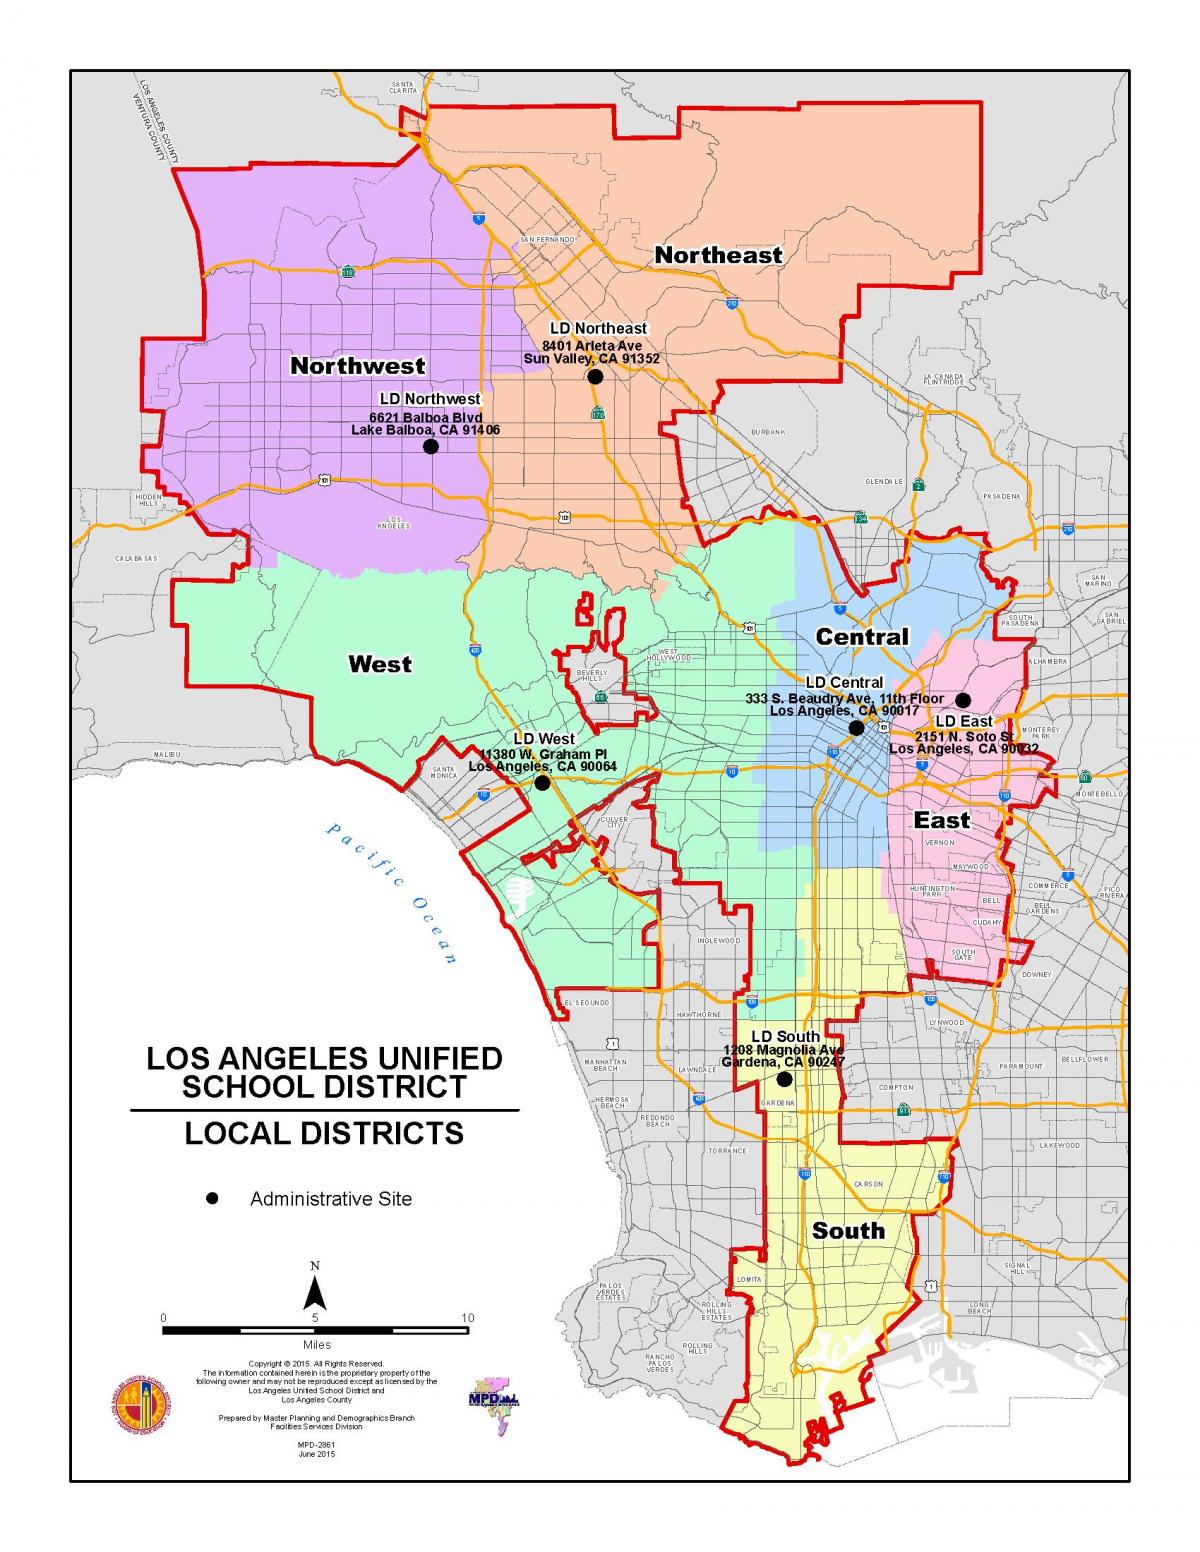 Лос-Анджелес Каунти школьный округ на карте